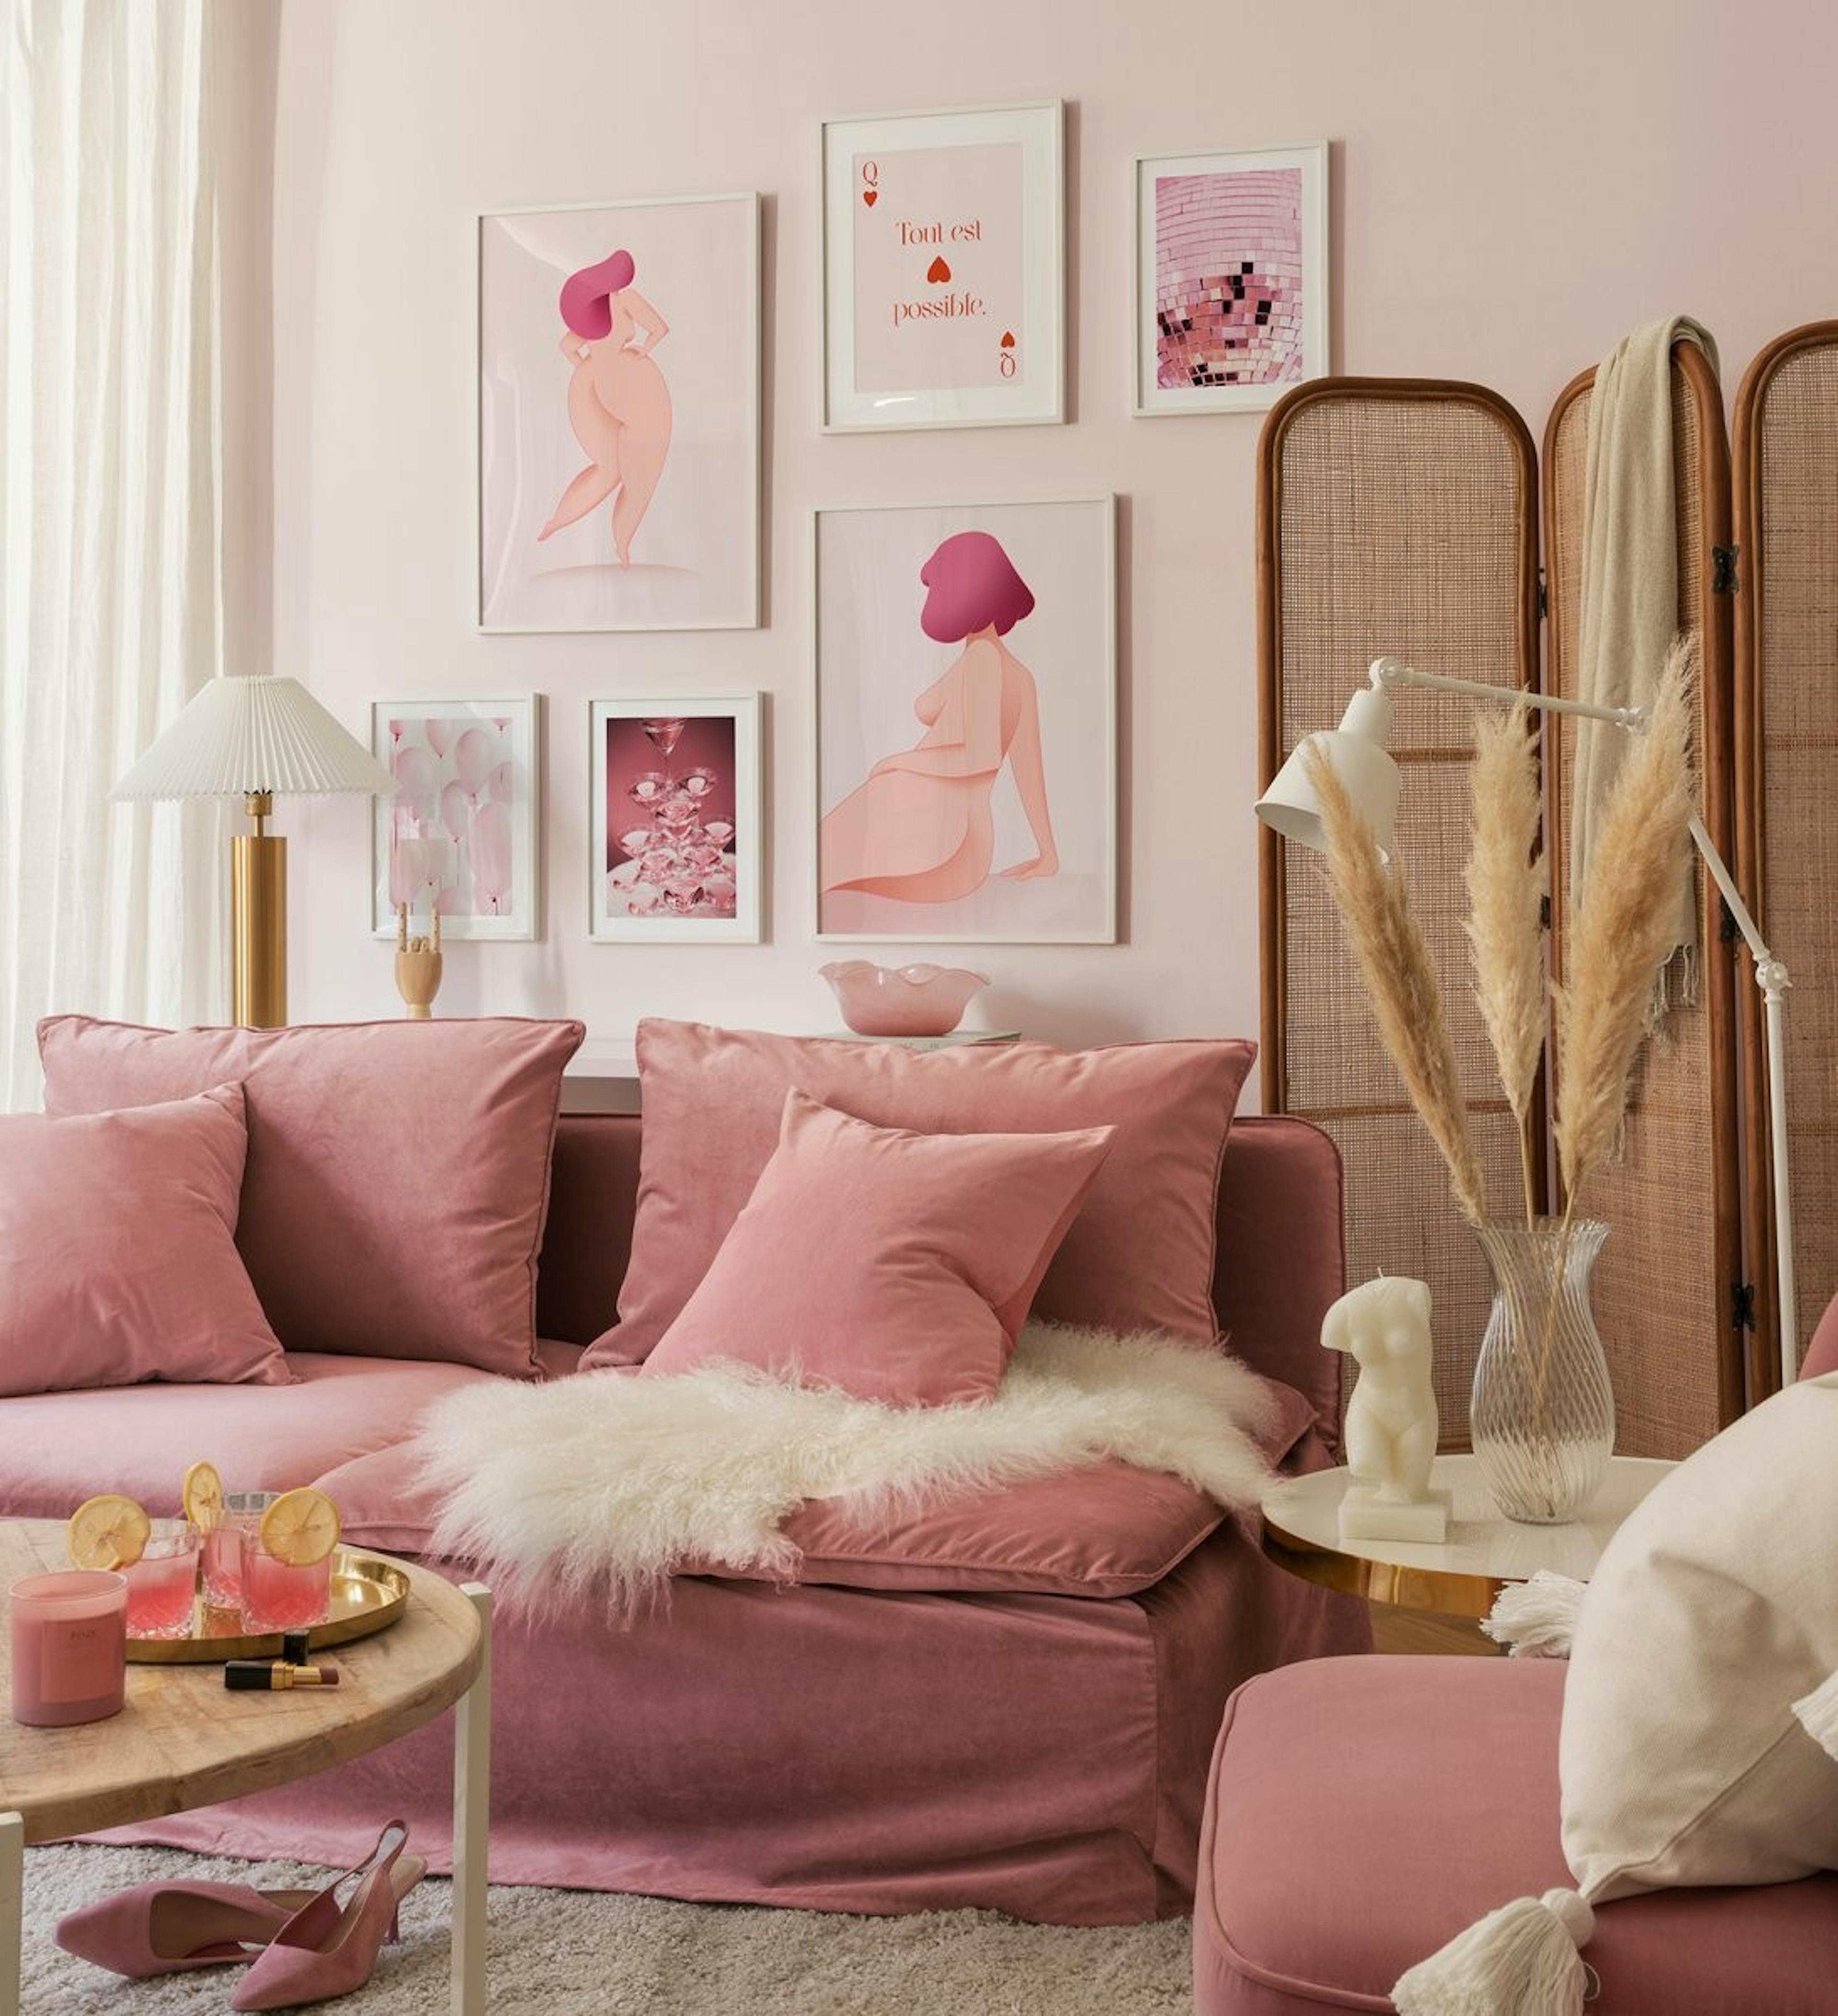 جدار معرض مستوحى من قوة الفتاة باللون الوردي من الأشكال الأنثوية والرسوم التوضيحية والصور الفوتوغرافية مع إطارات خشبية بيضاء لغر